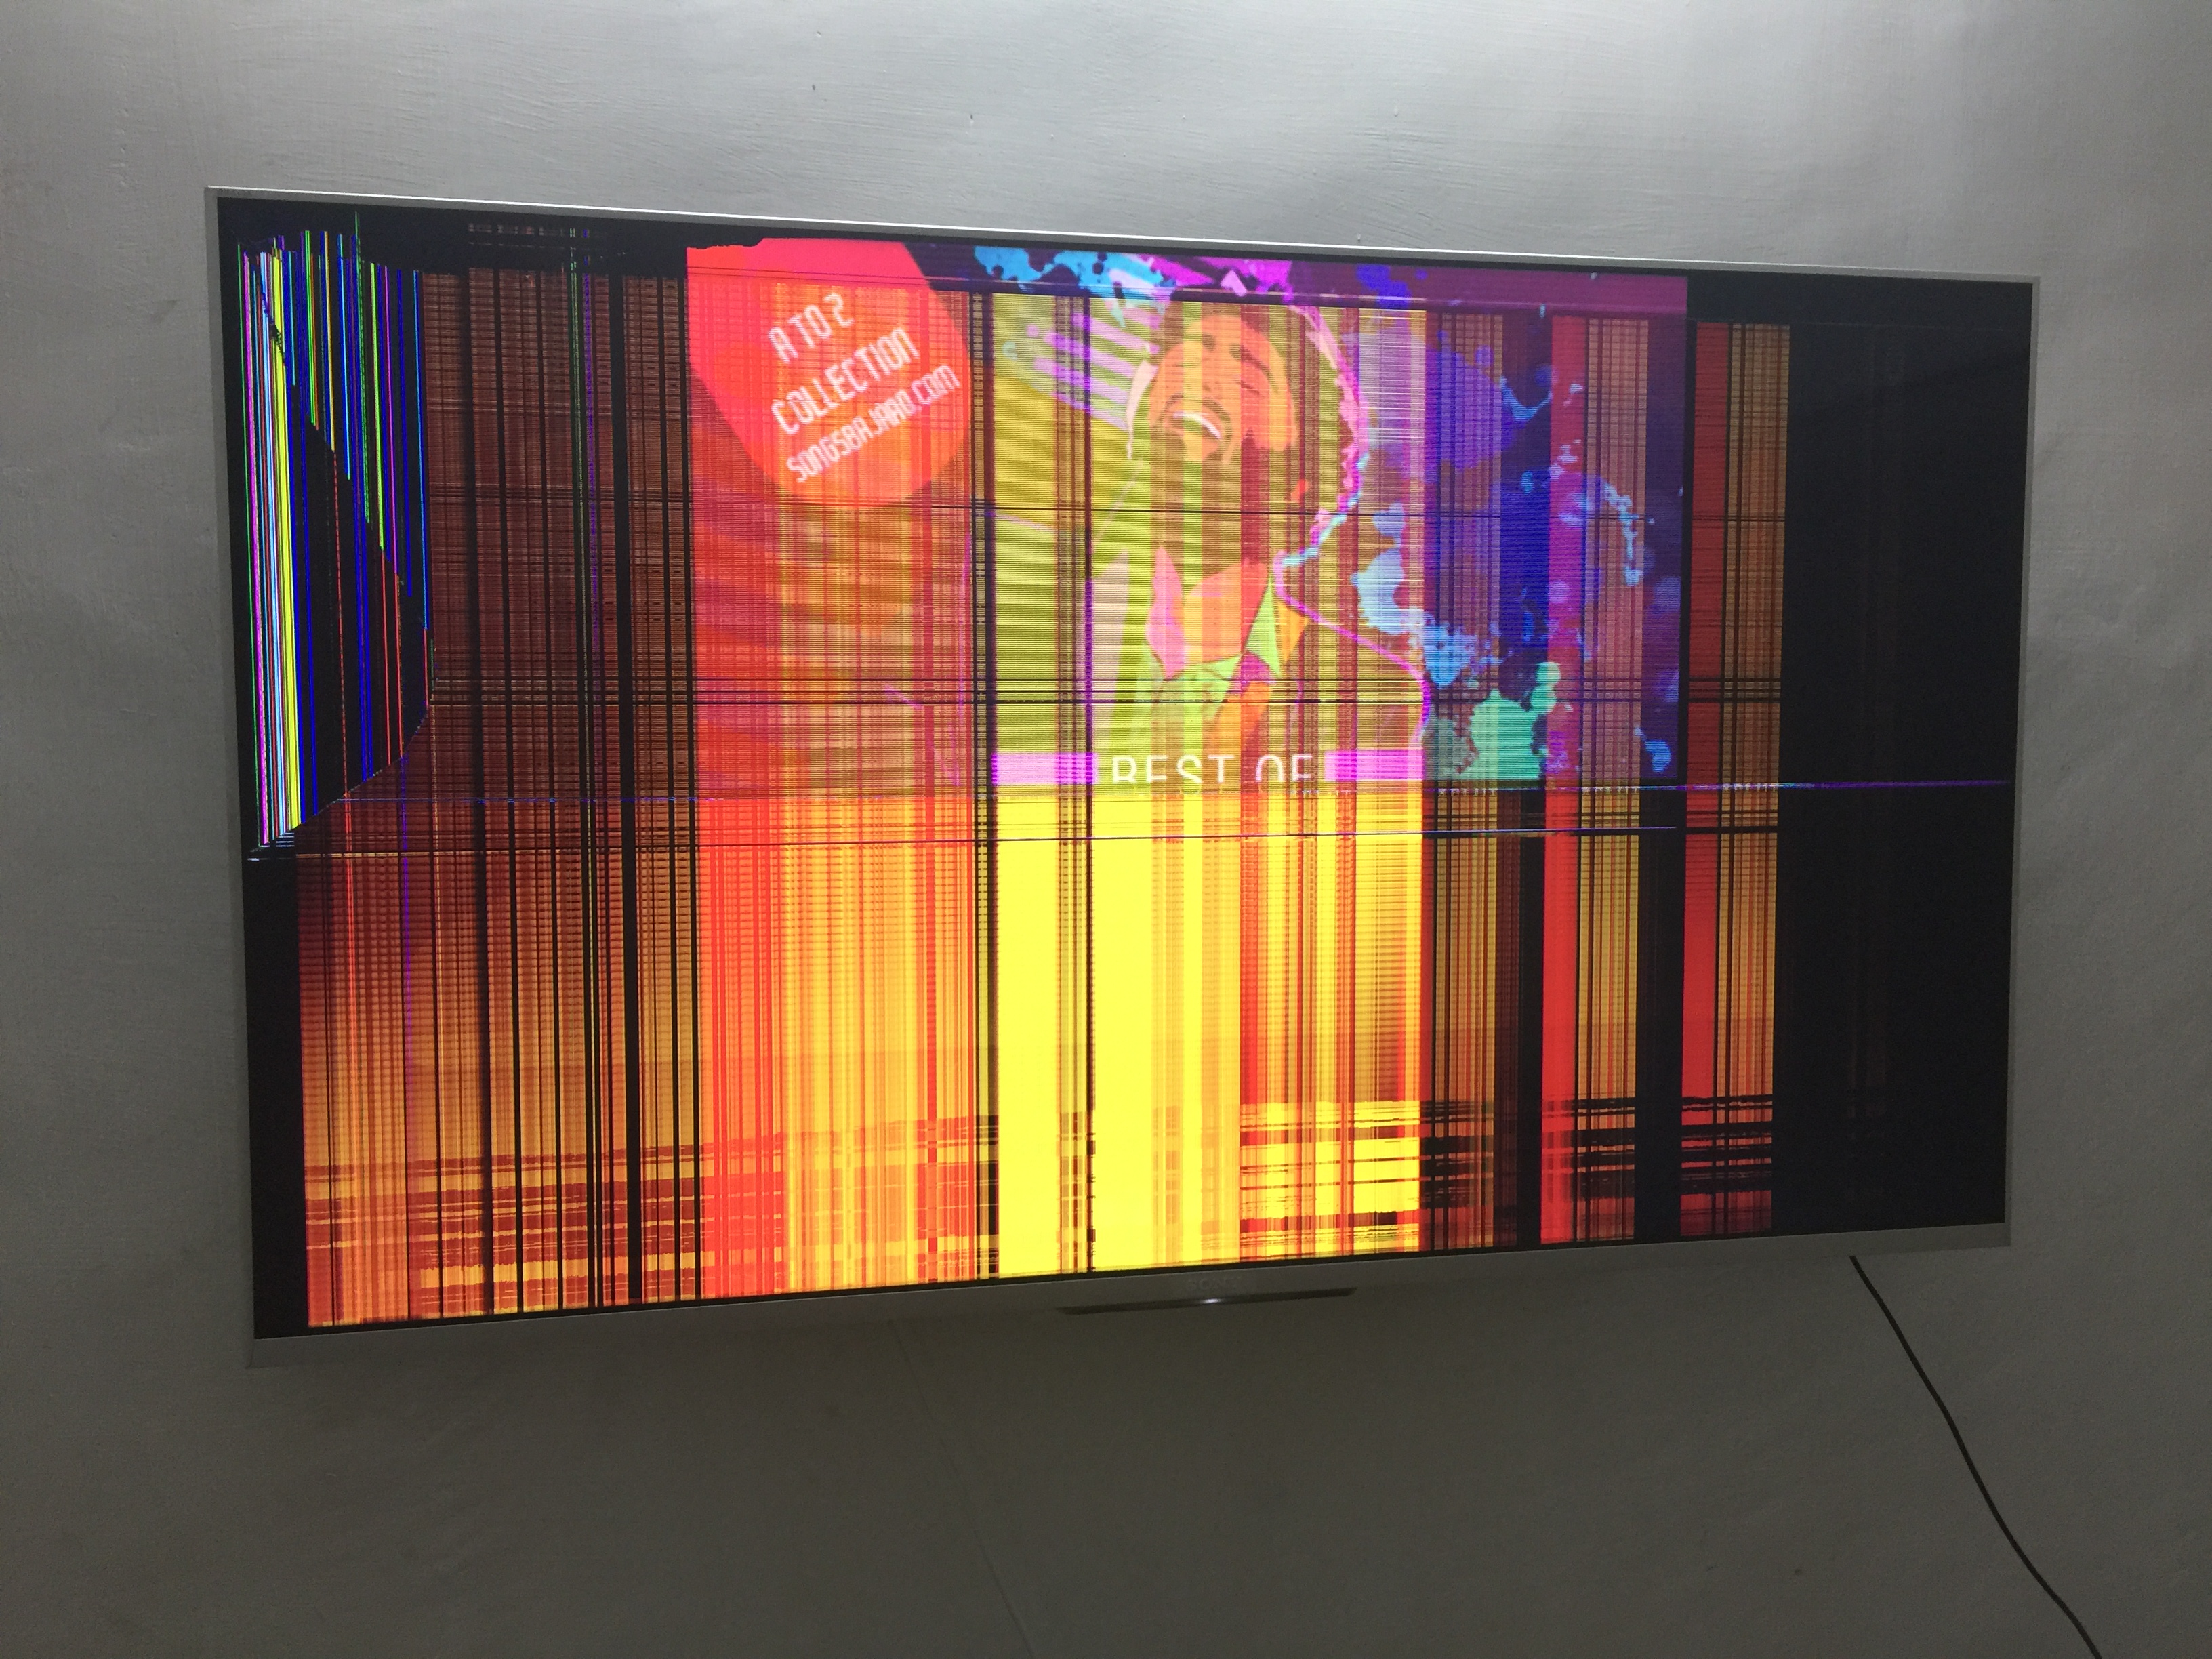 Display screen of TV